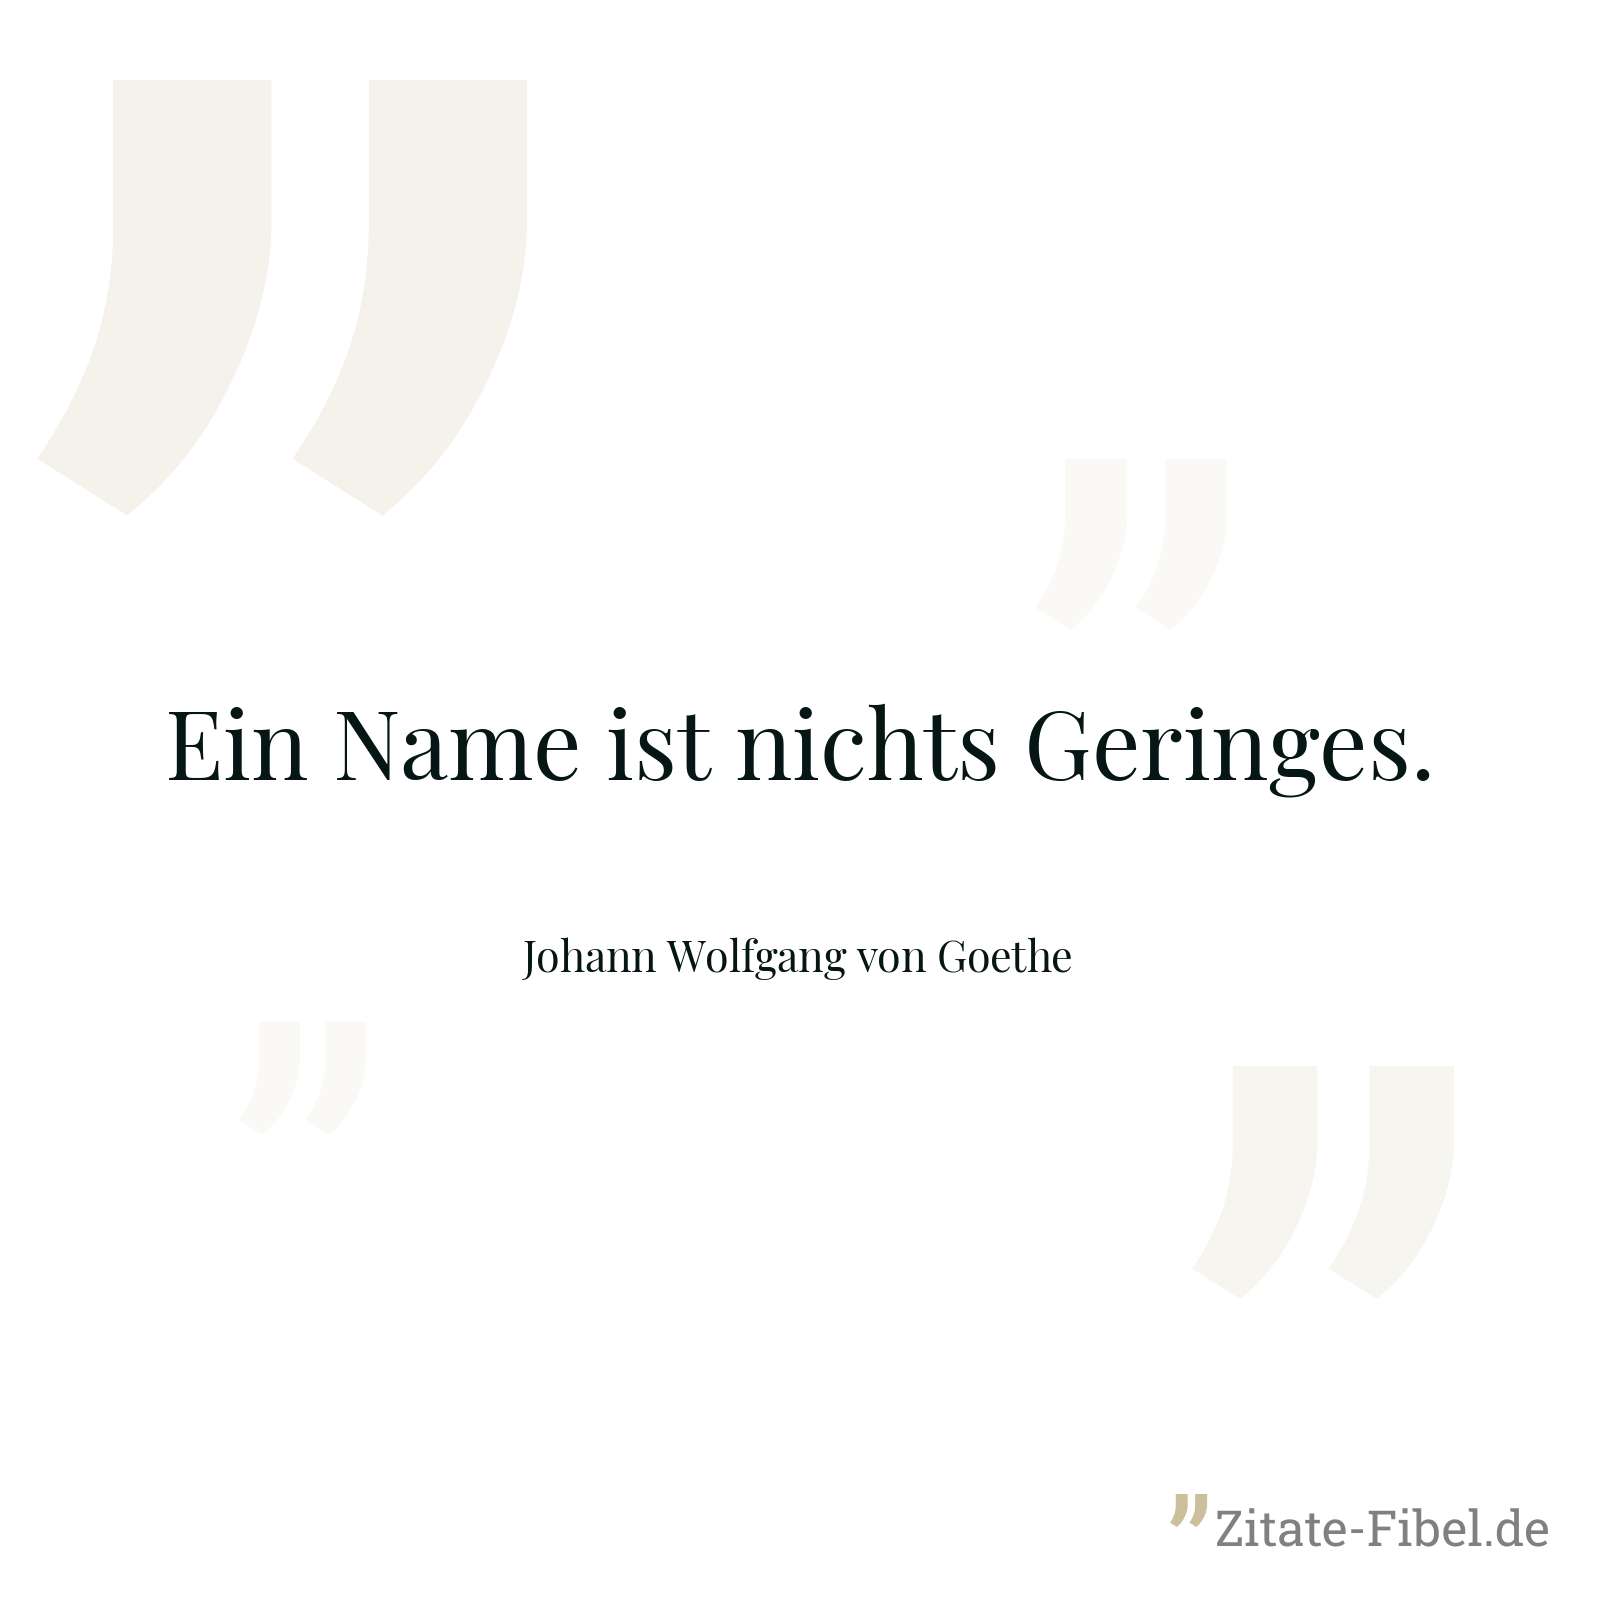 Ein Name ist nichts Geringes. - Johann Wolfgang von Goethe